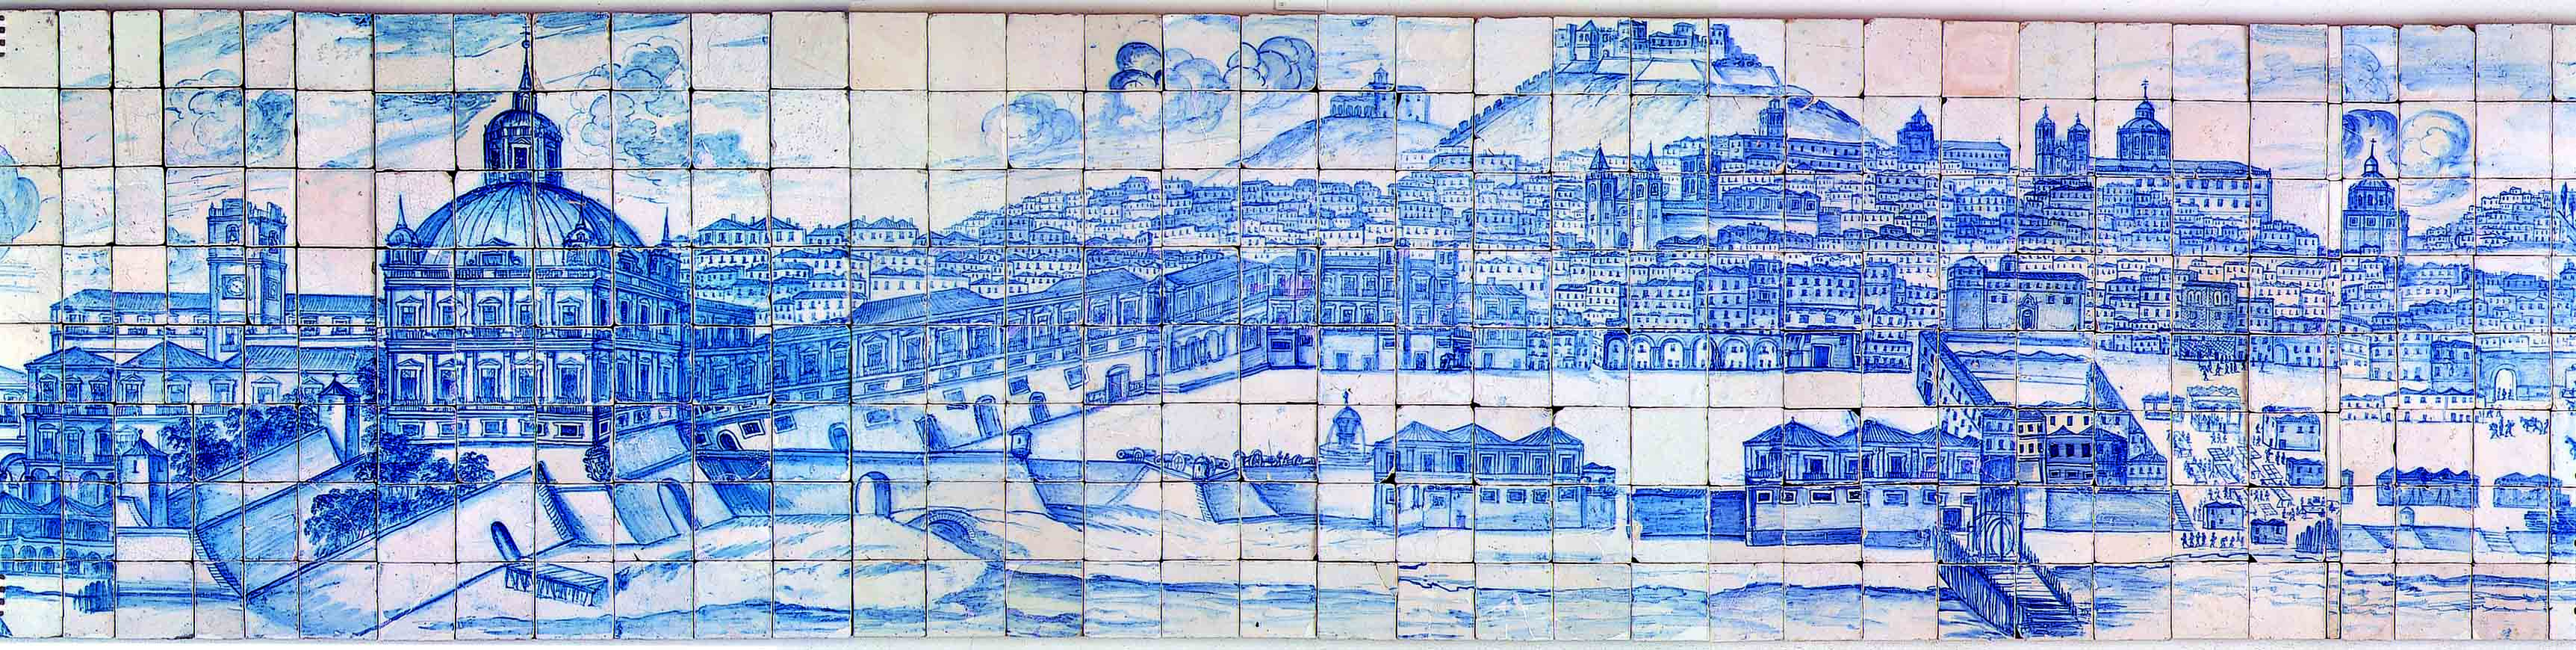 Imagem cedida gentilemente pelo museu do azulejo de Lisboa